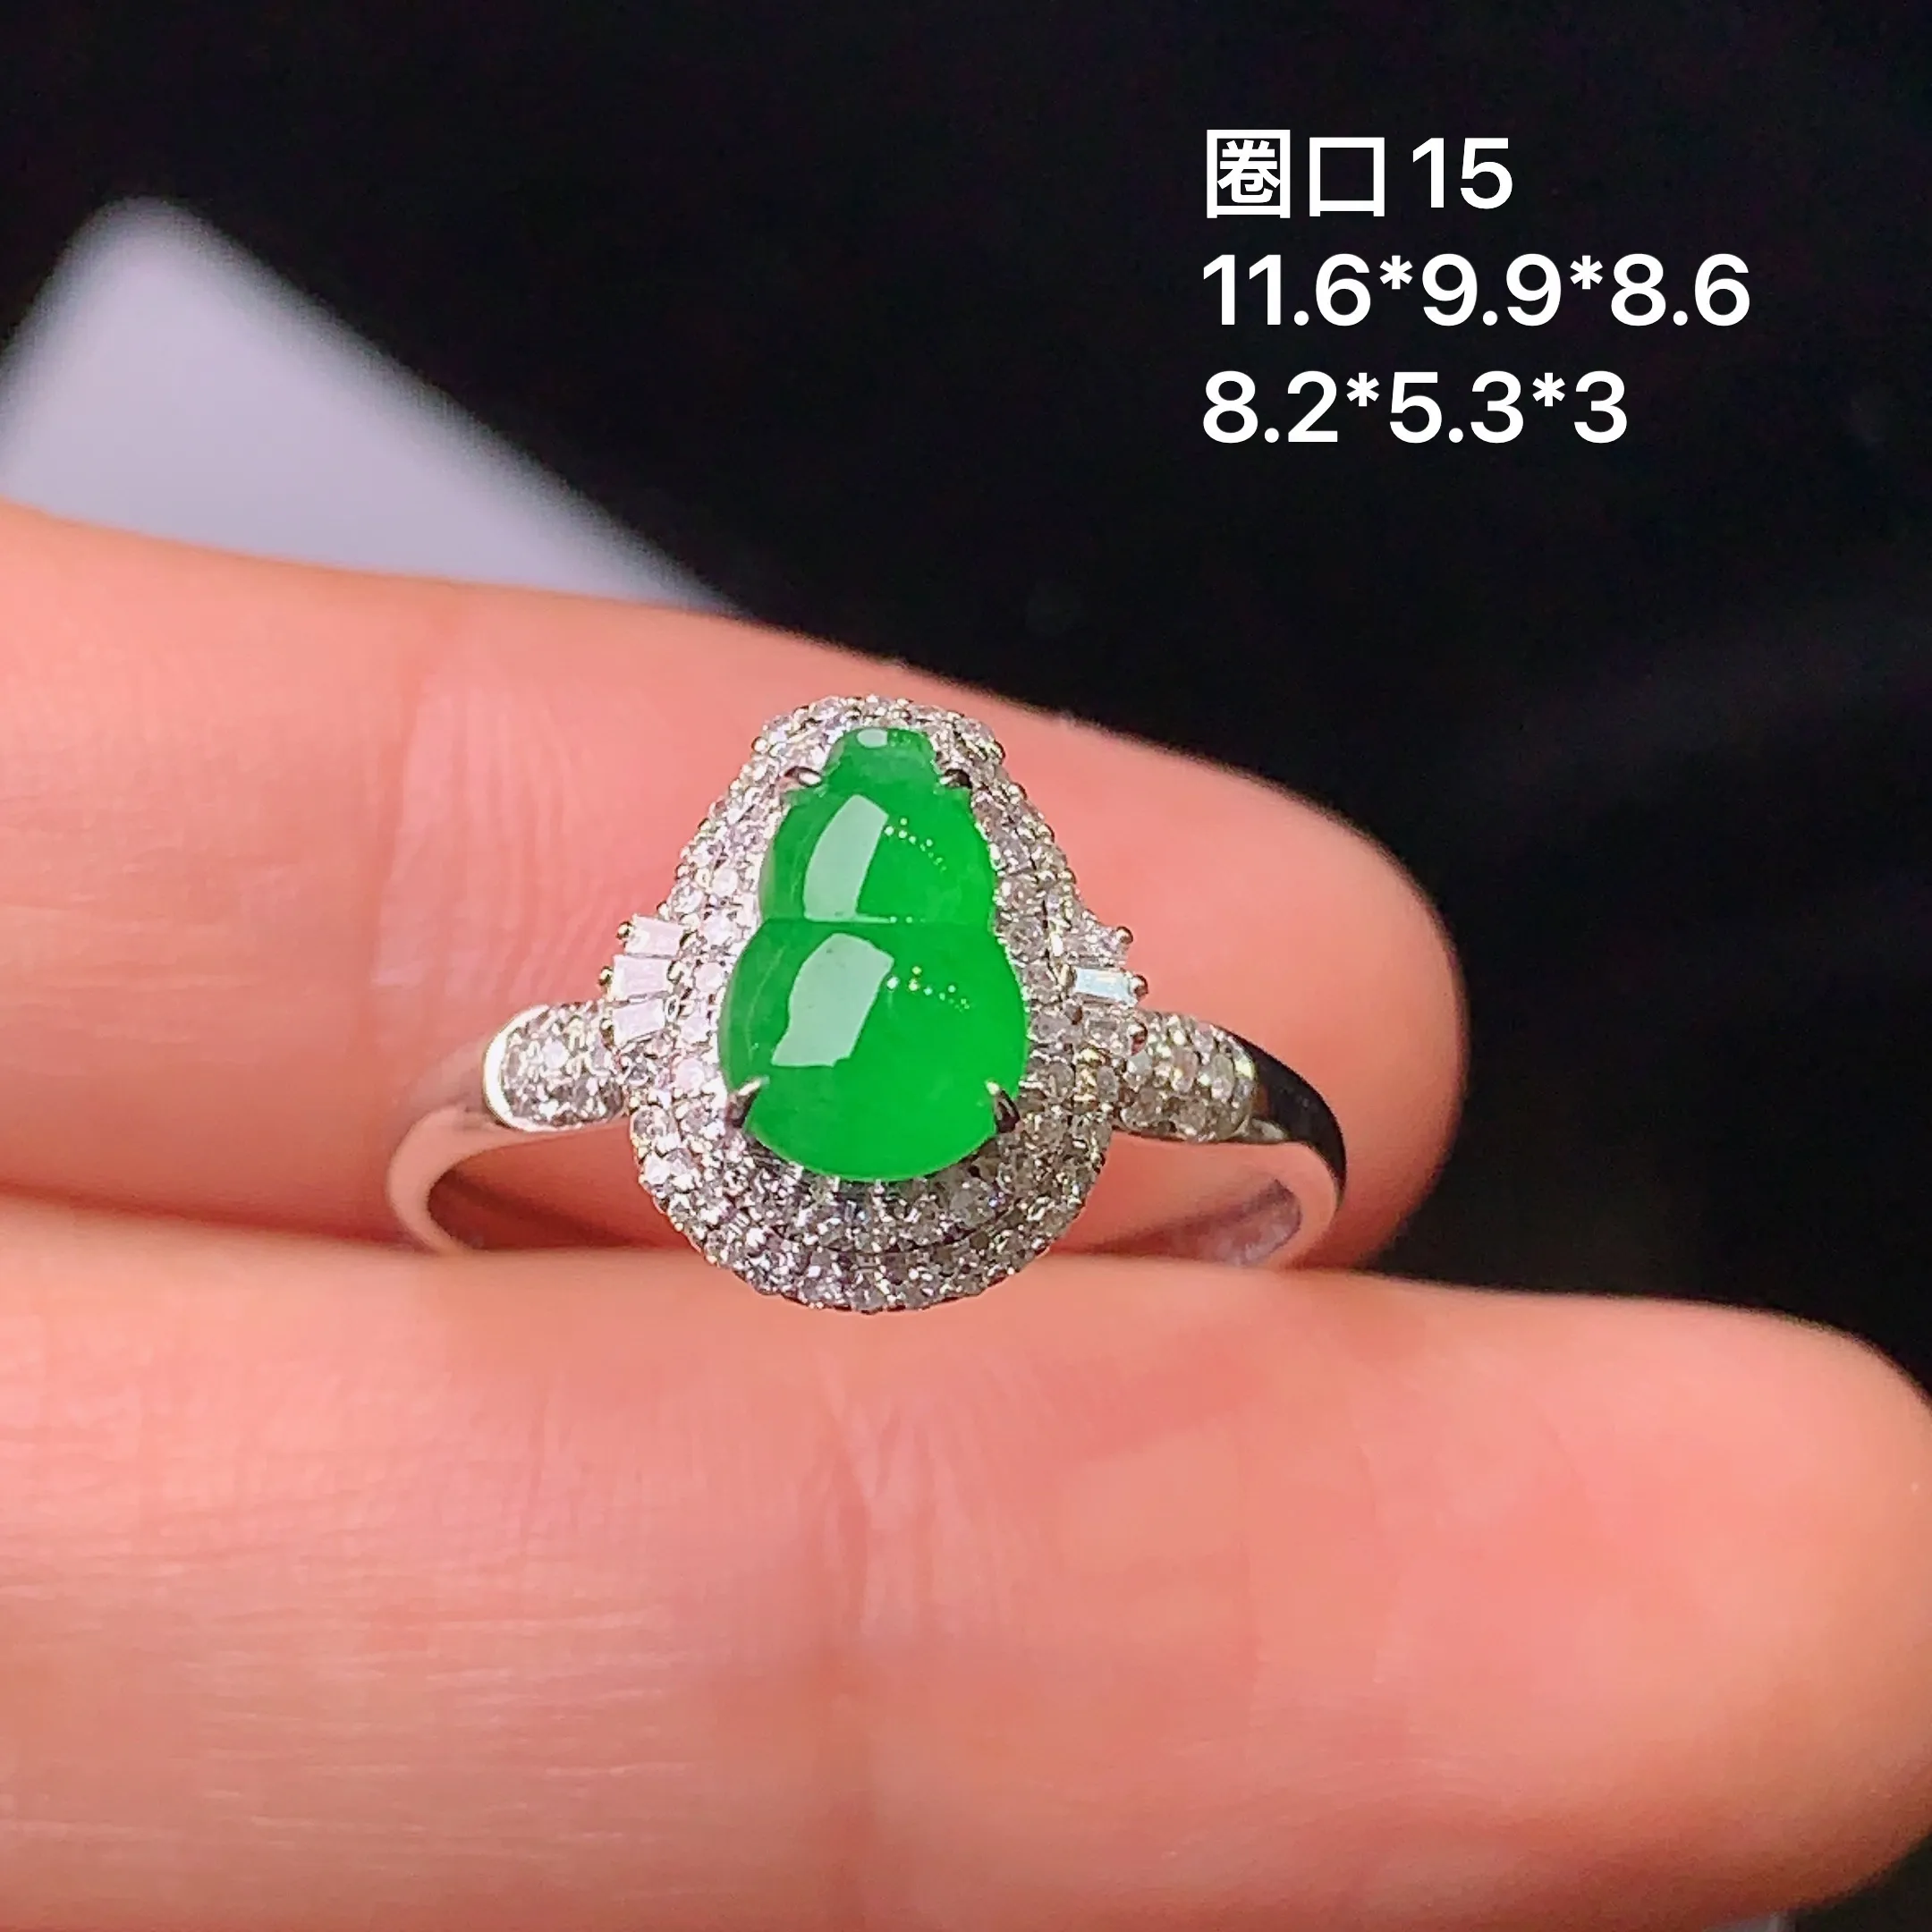 18k金钻镶嵌满绿葫芦戒指 玉质细腻 色泽艳丽 款式新颖时尚唯美 圈口15 整体尺寸11.6*9.9*8.6